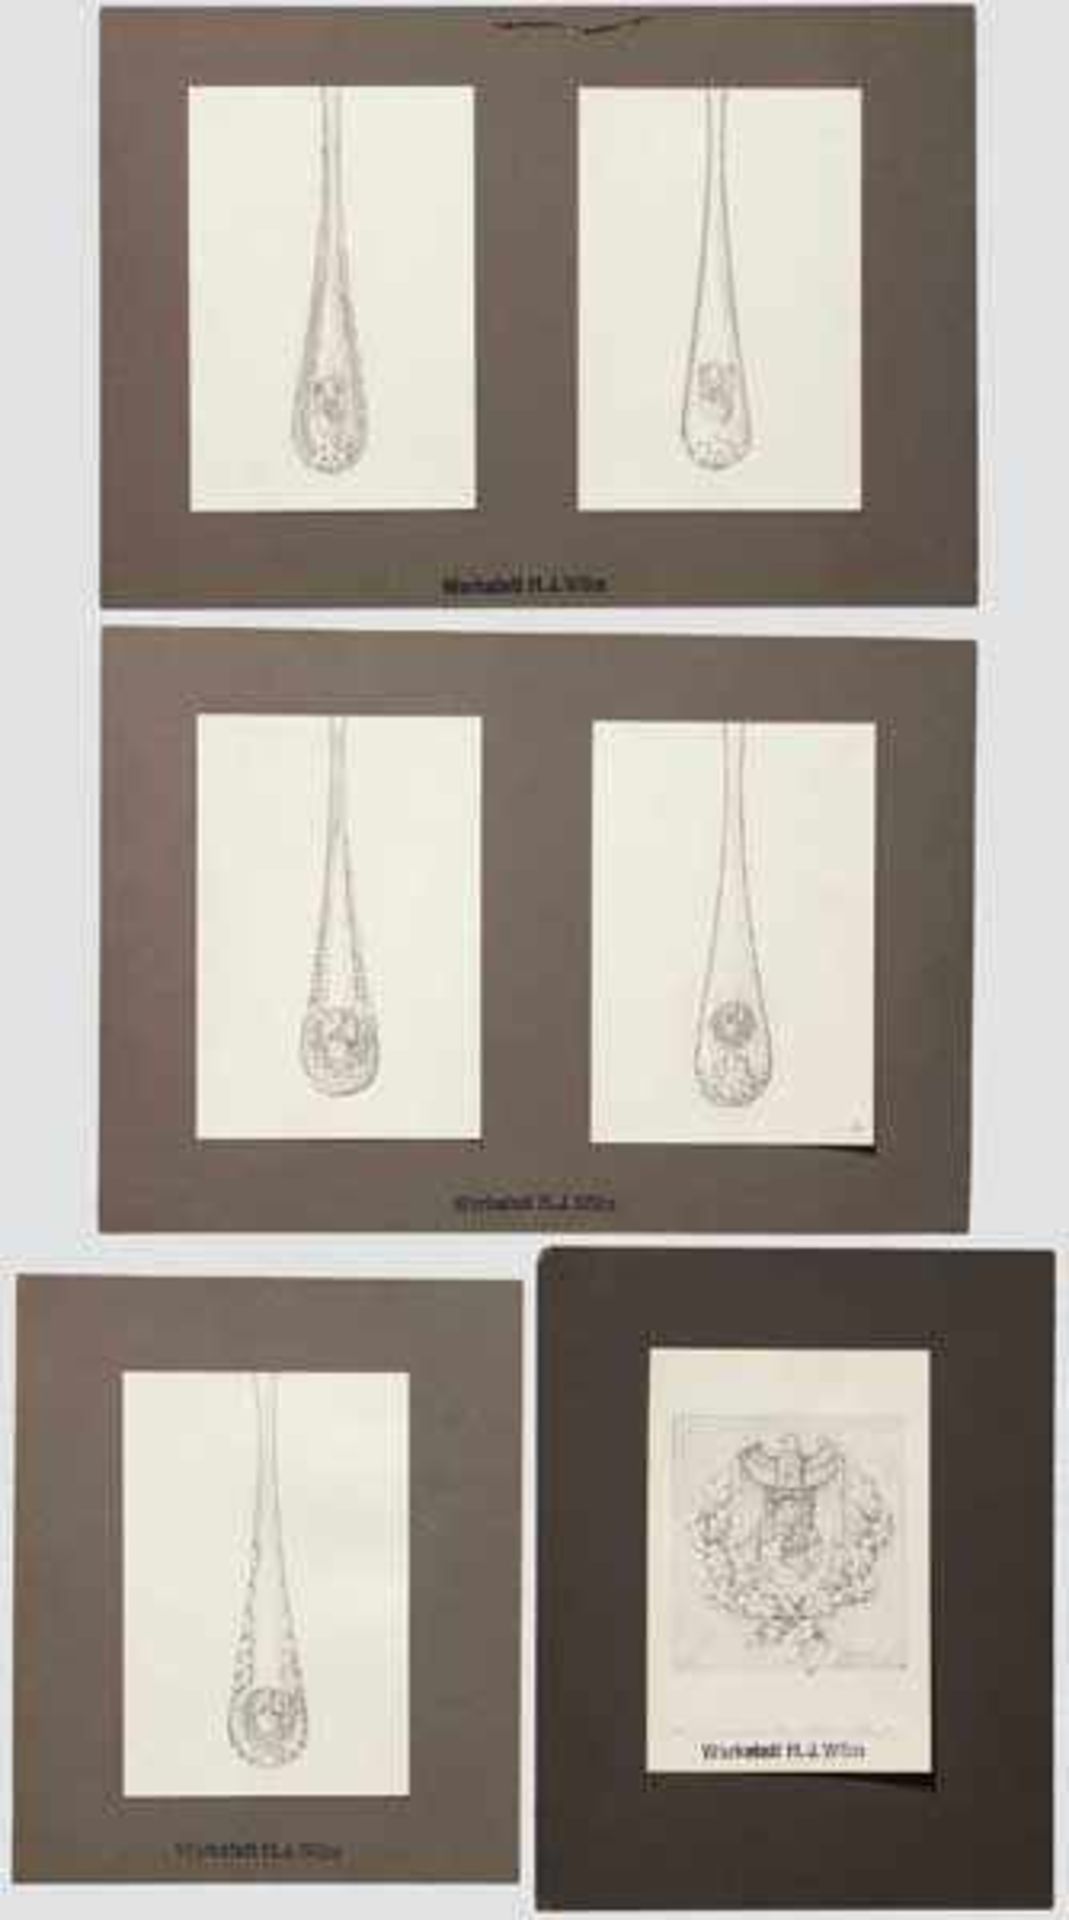 Sechs Entwurfzeichnungen des Juweliers H.H. Wilm für ein Galabesteck des Auswärtigen Amtes Bleistift